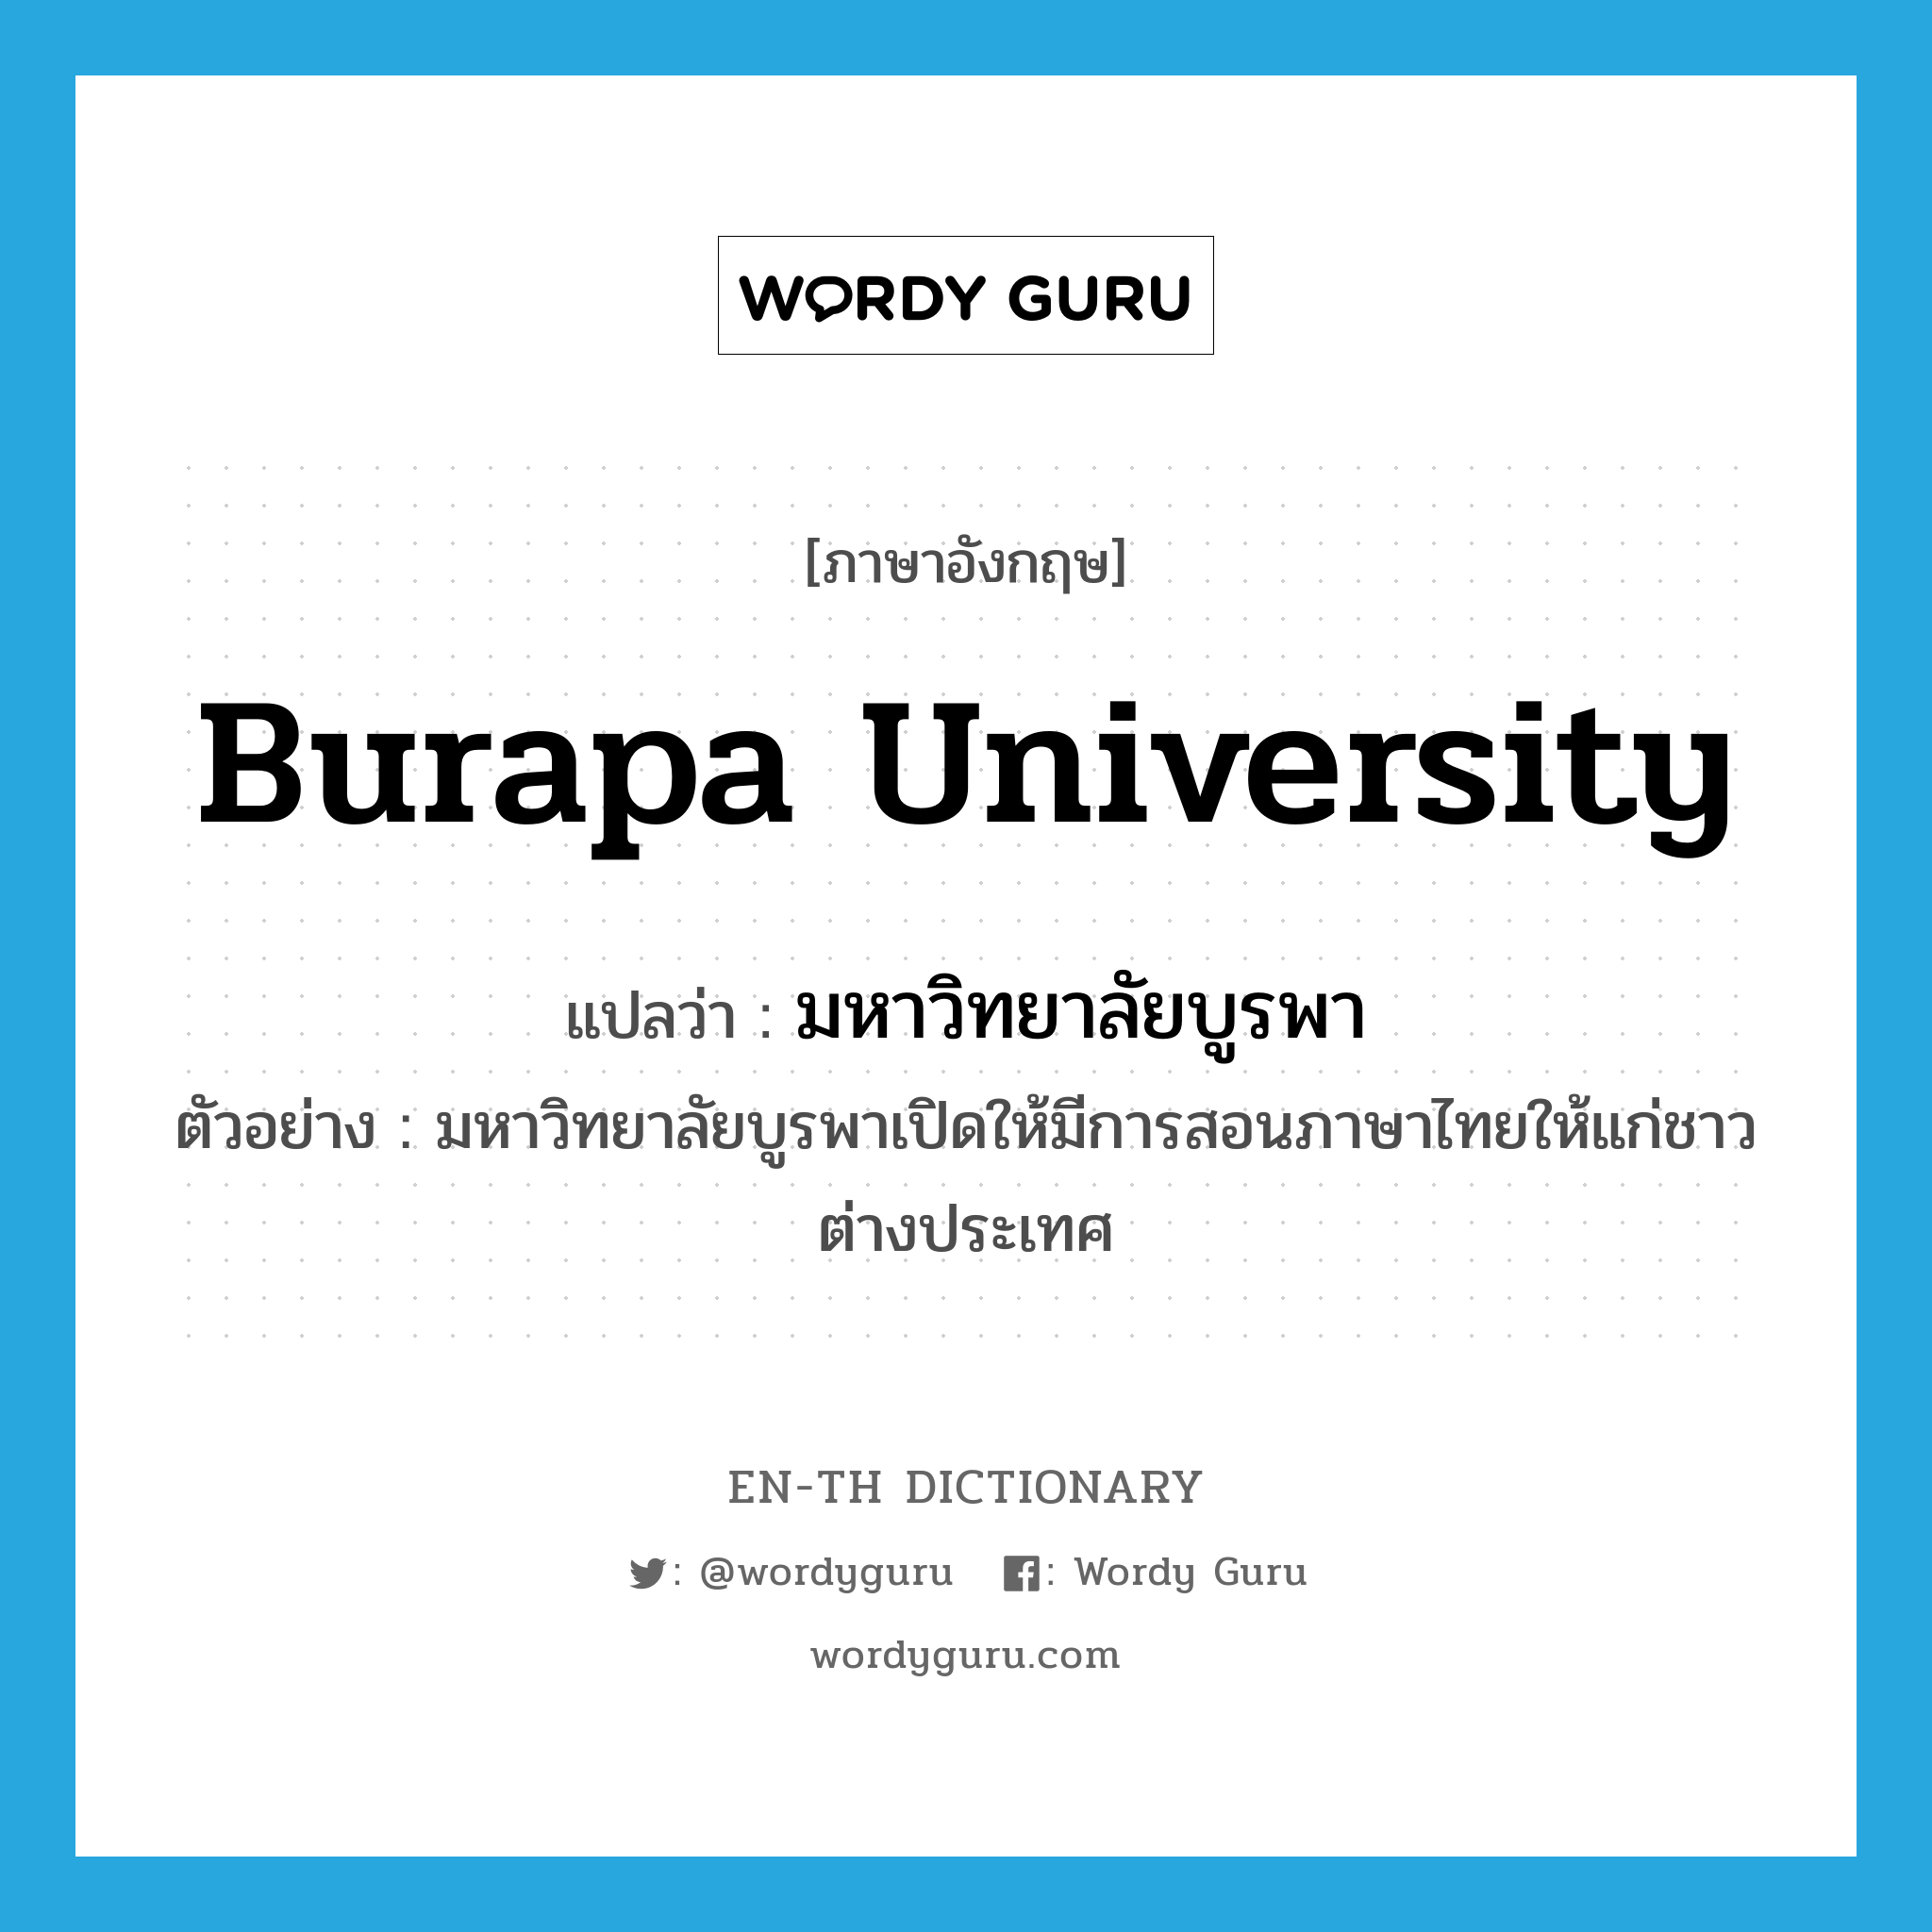 Burapa University แปลว่า?, คำศัพท์ภาษาอังกฤษ Burapa University แปลว่า มหาวิทยาลัยบูรพา ประเภท N ตัวอย่าง มหาวิทยาลัยบูรพาเปิดให้มีการสอนภาษาไทยให้แก่ชาวต่างประเทศ หมวด N